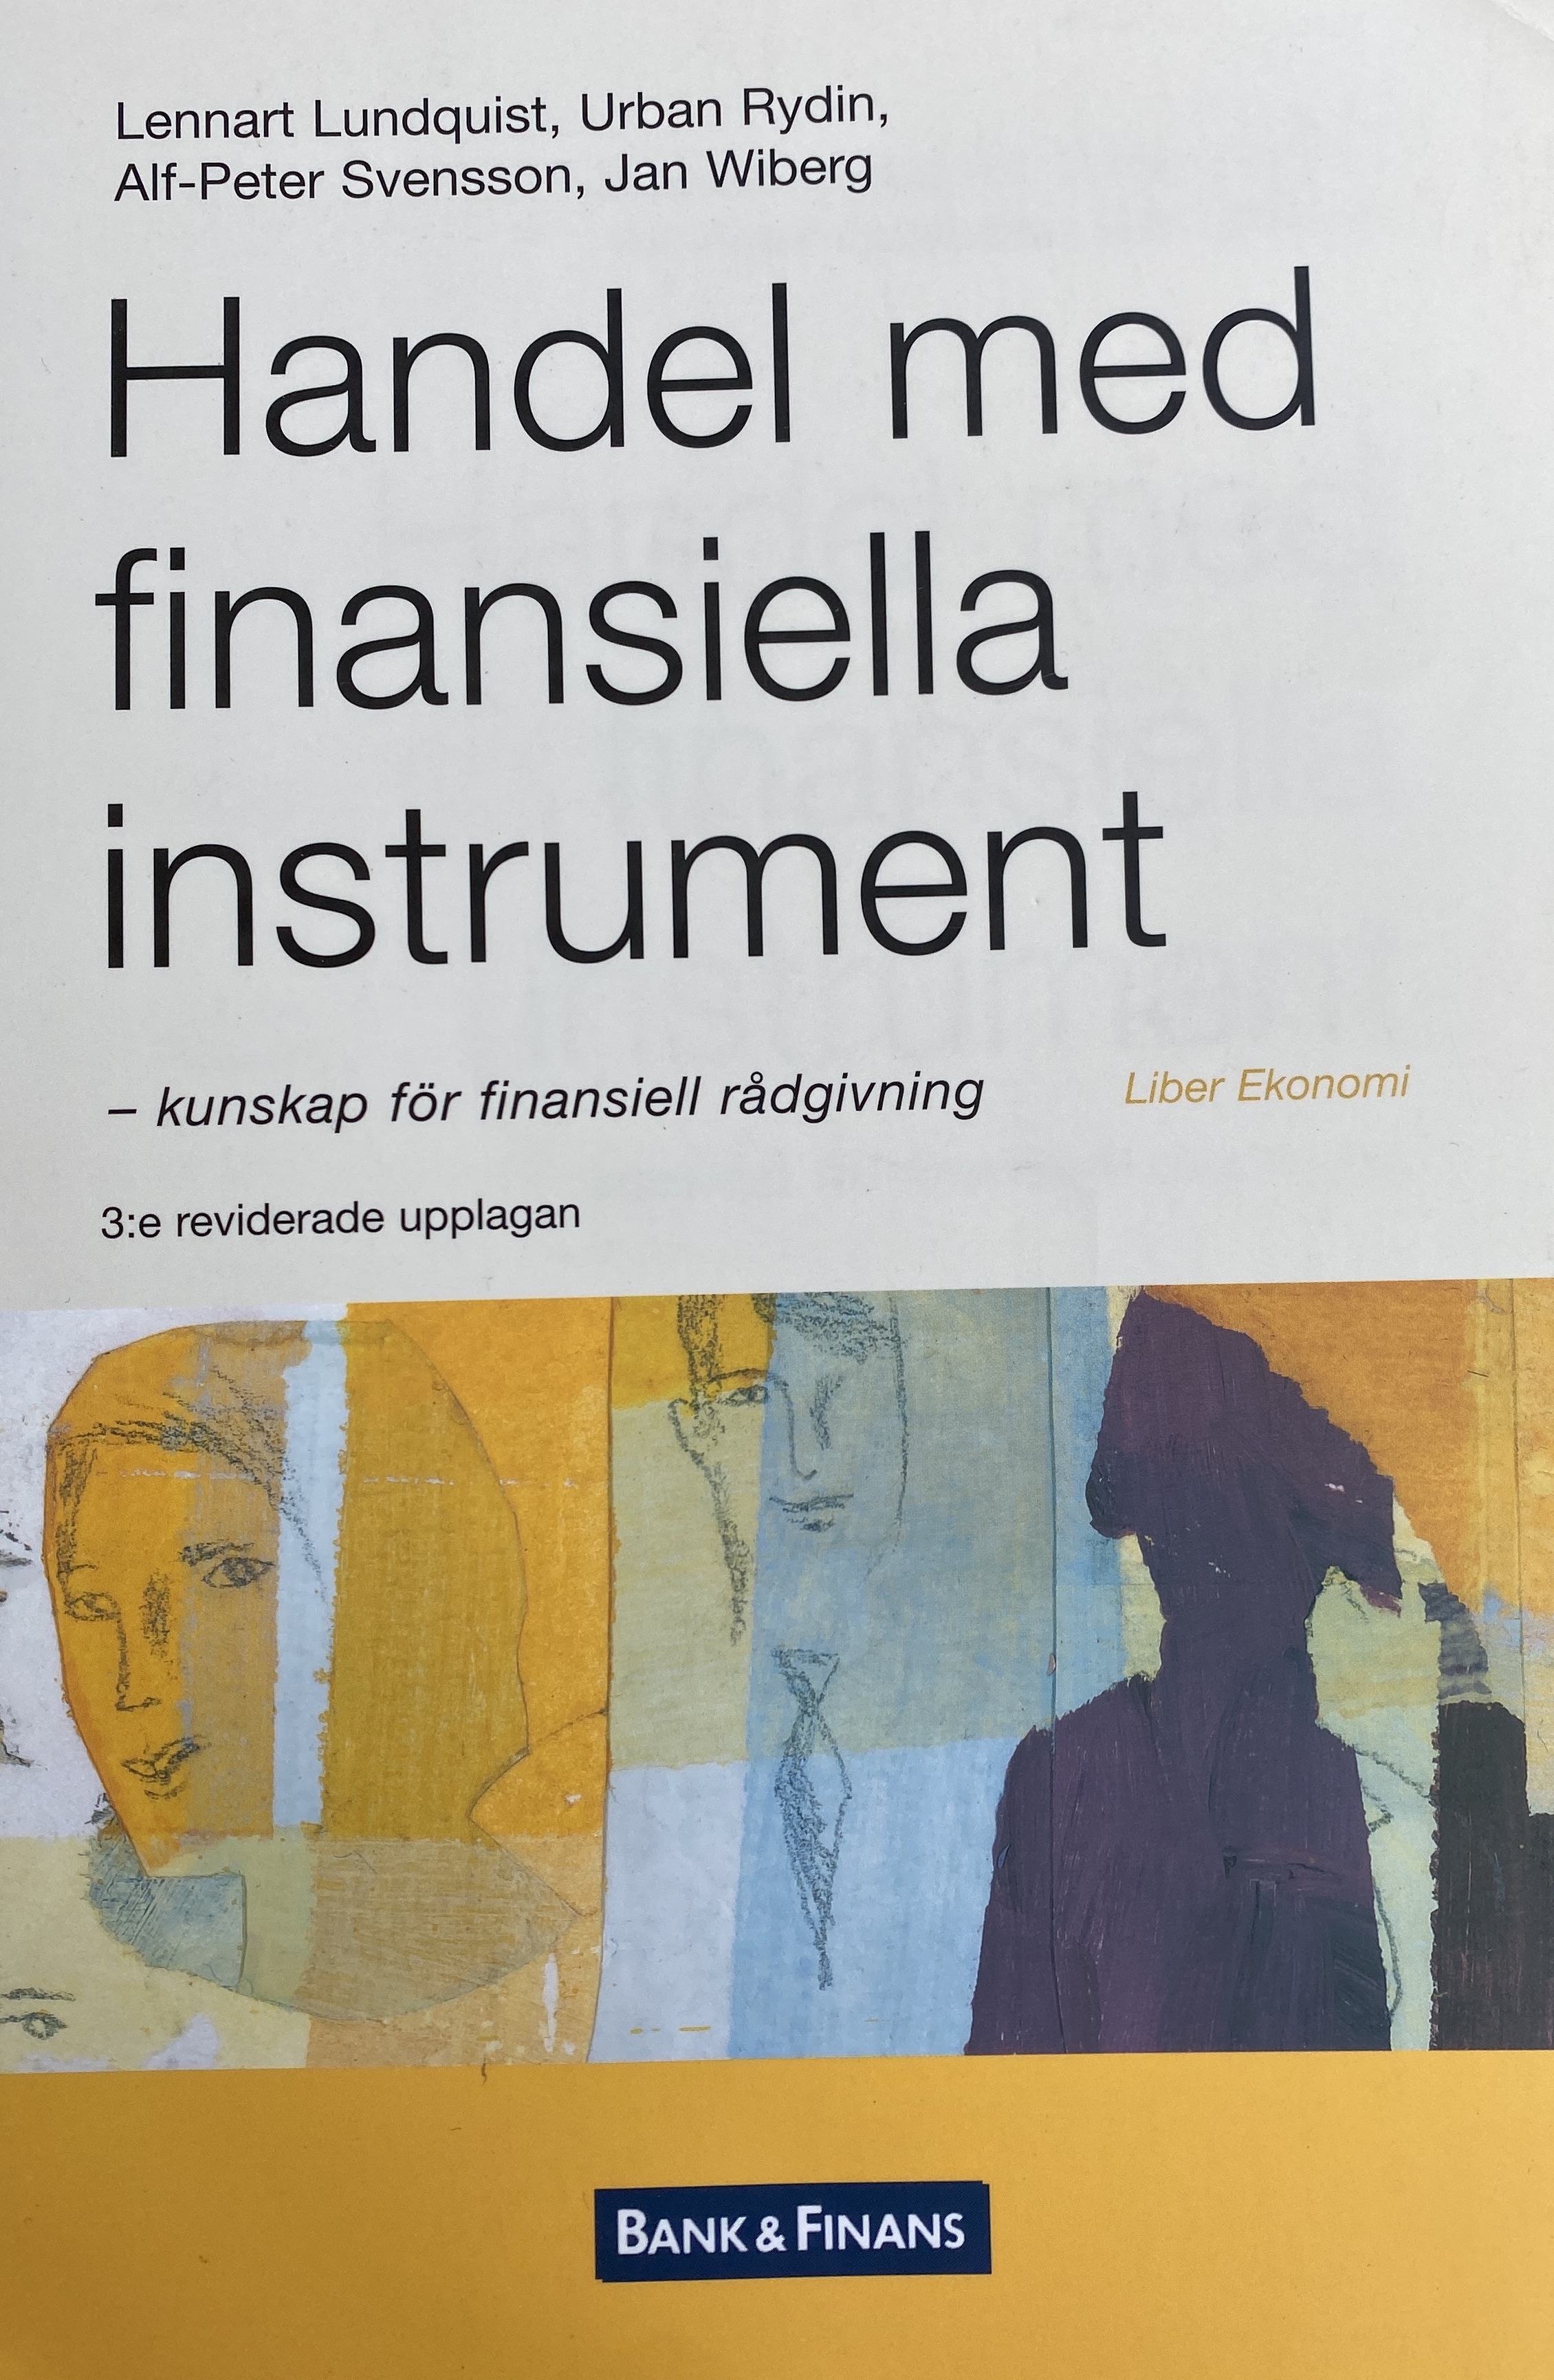 Handel med finansiella instrument - kunskap för finansiell rådgivning; Mats Beckman, Ella Grundell, Lennart Lundquist, Alf-Peter Svensson, Jan Wiberg; 2004